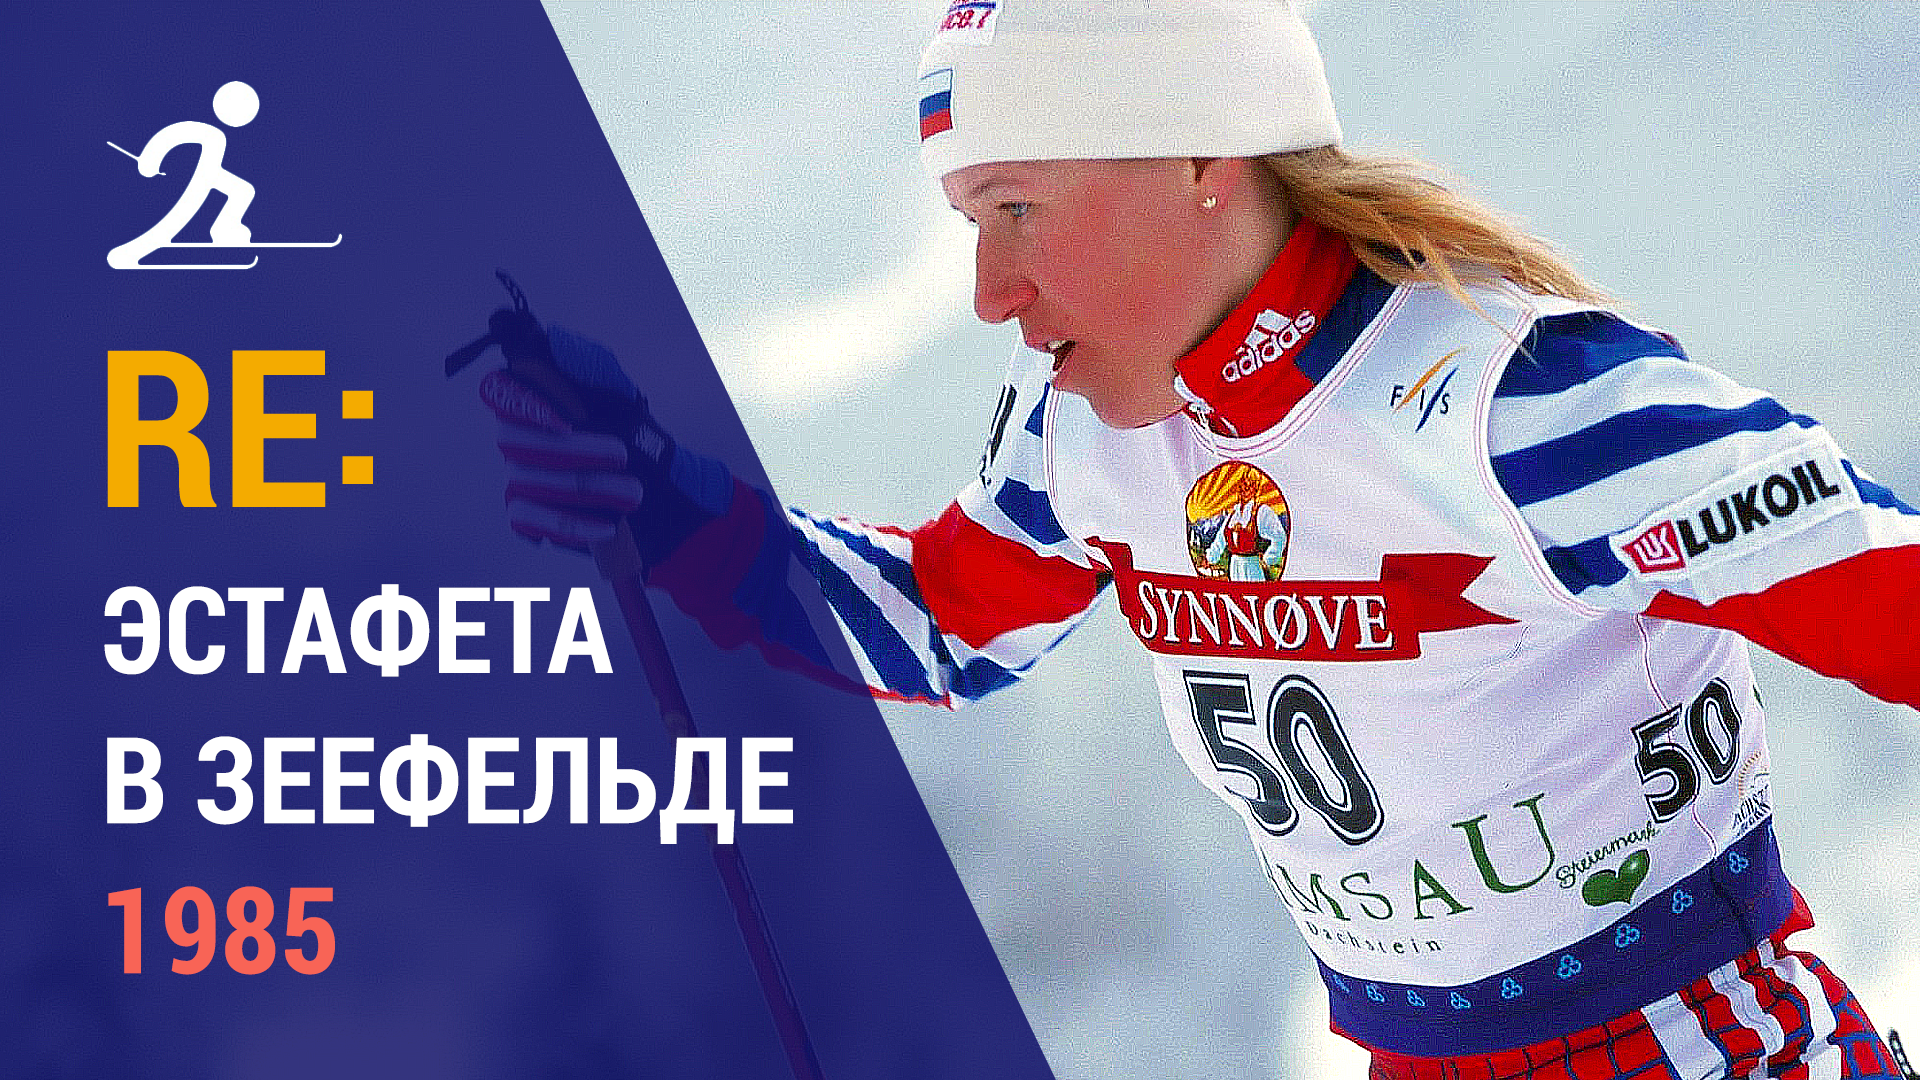 Лыжные гонки. Эстафета в Зеефельде 1985 | Ретроспектива памяти Анфисы Резцовой